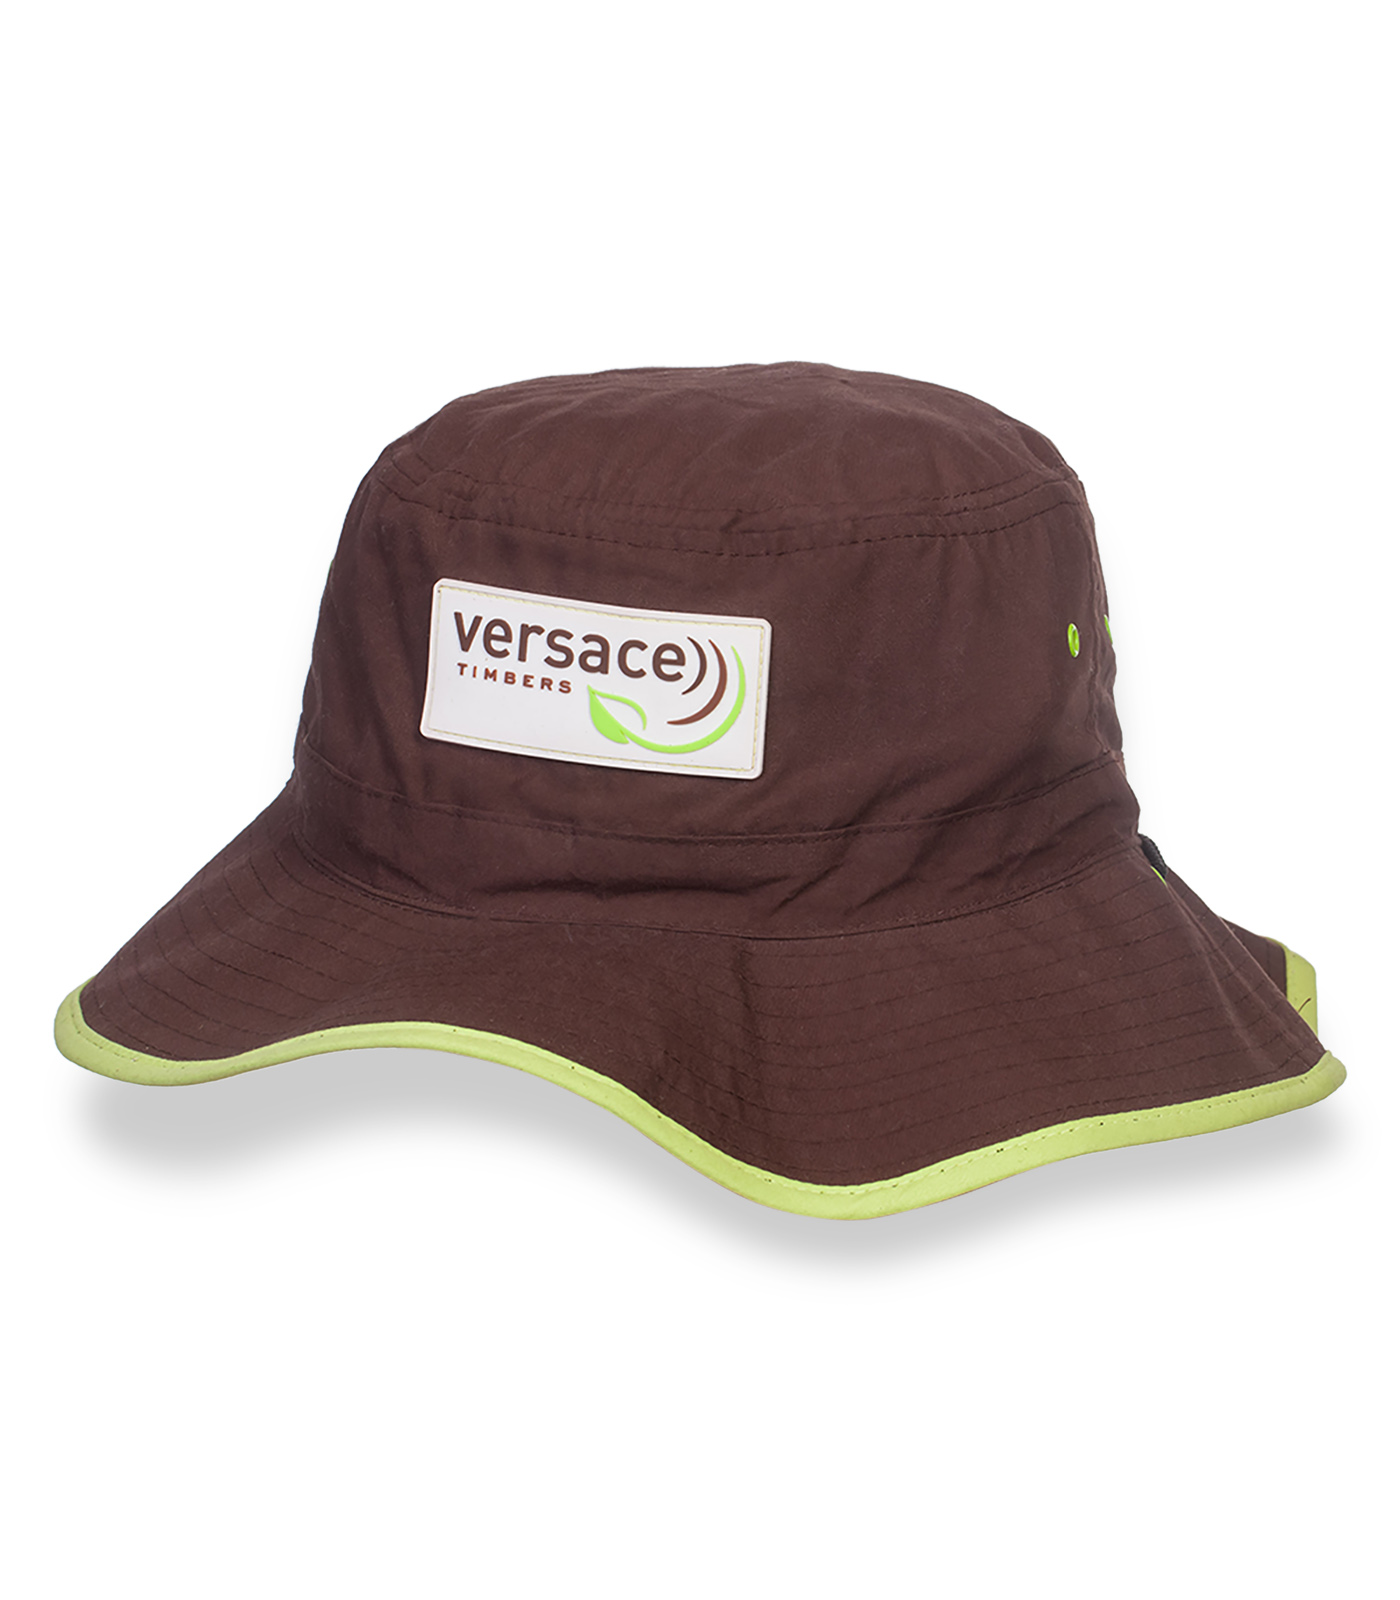 Купить коричневую сочную шляпу-панаму Versace по экономичной цене